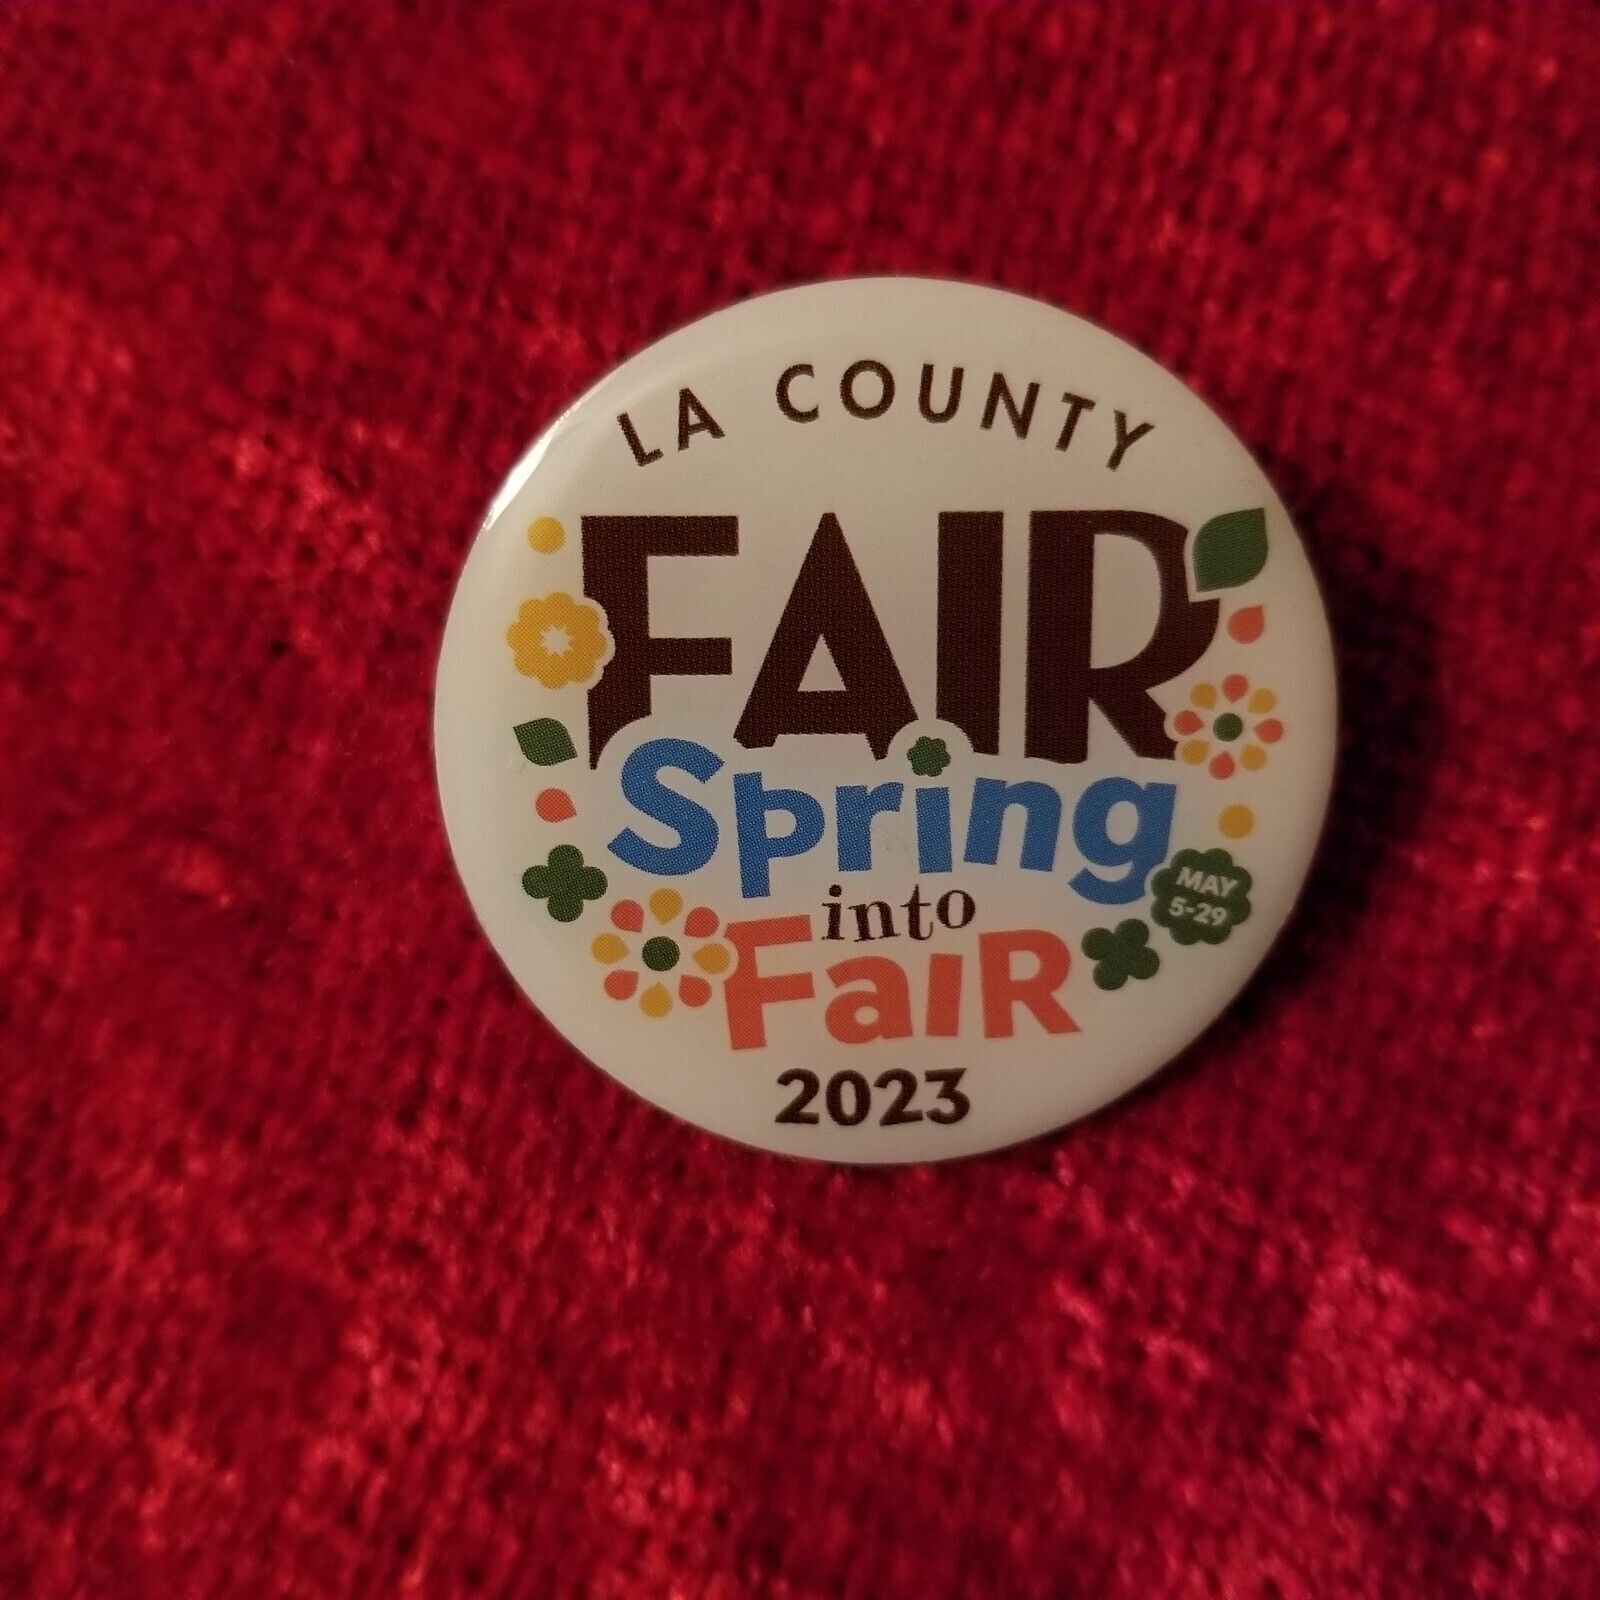 LA Los Angeles County Fair 2023 Spring into Fair Pin - New